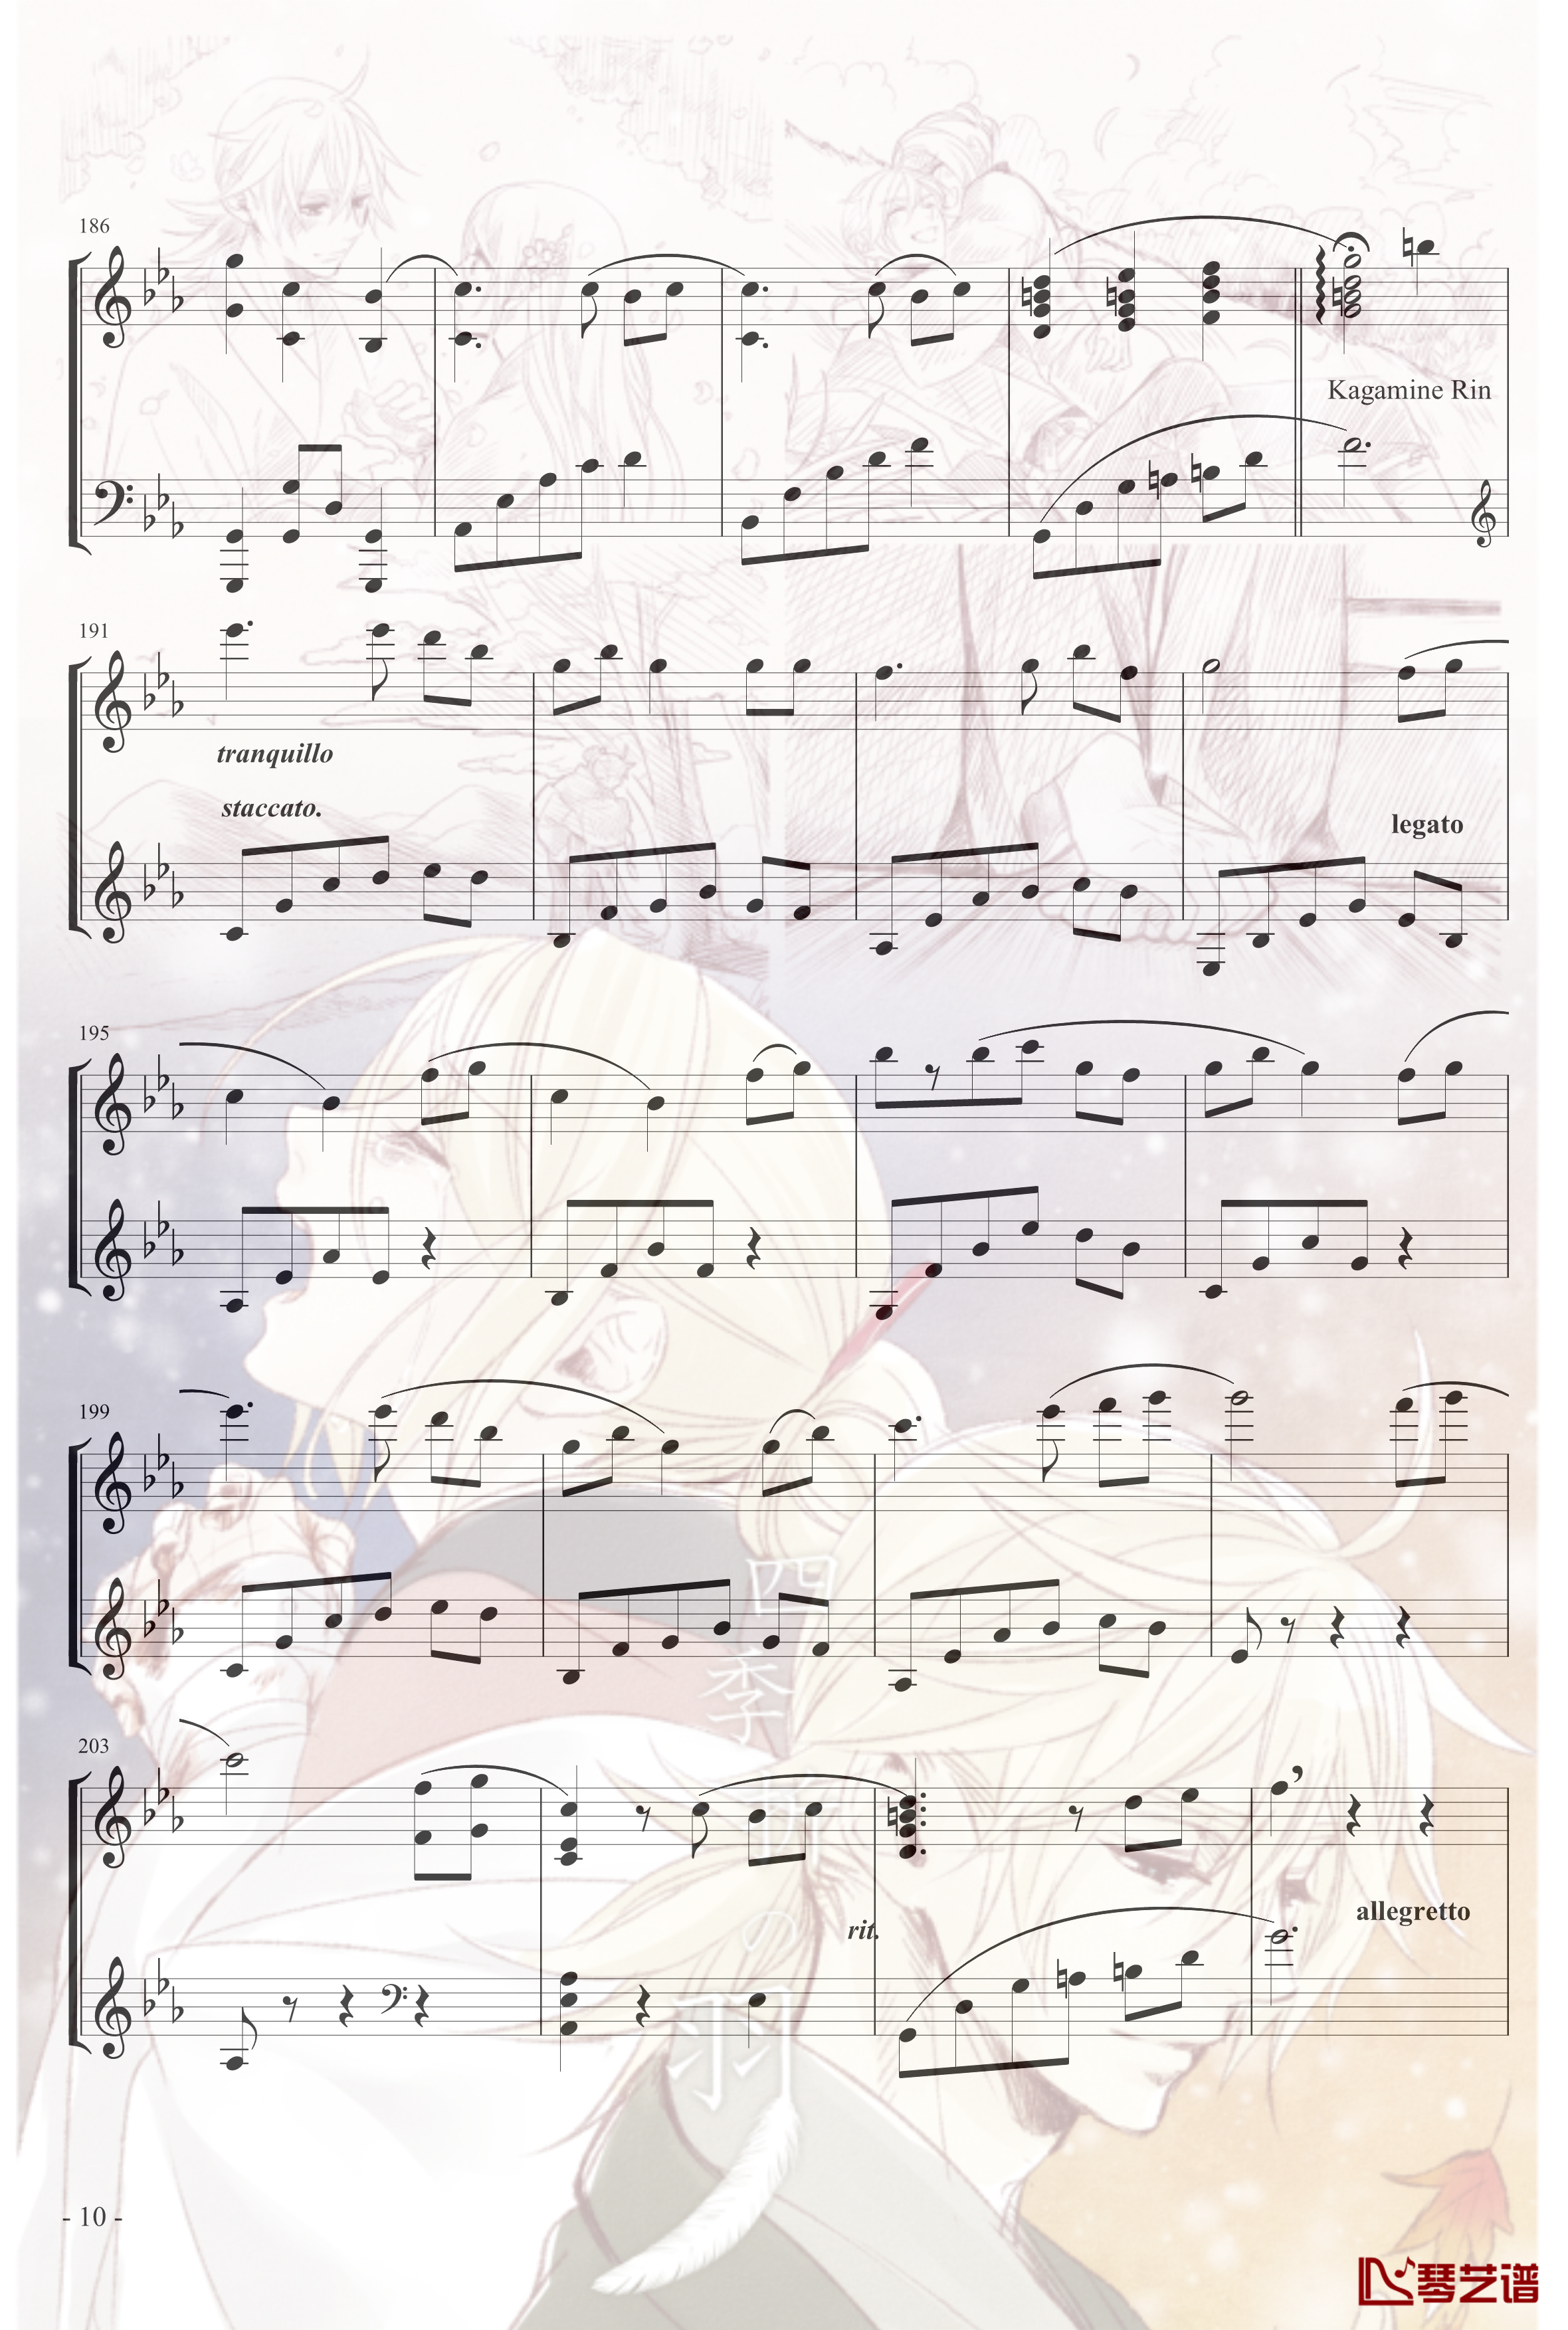 镜音リン レン四季折之羽钢琴谱-初音未来10